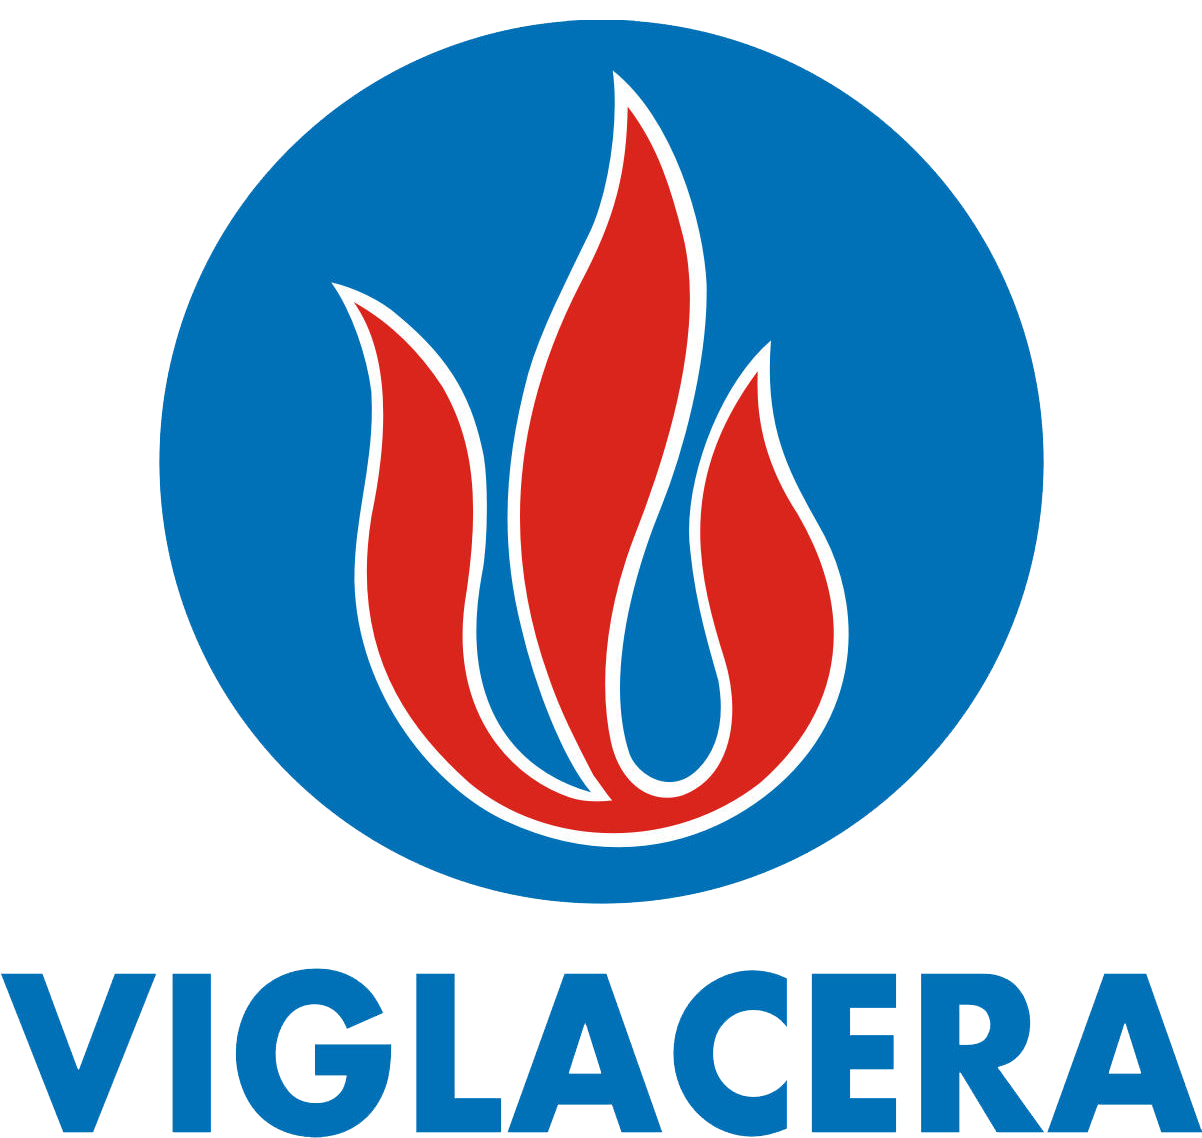 Về thương hiệu và logo “VIGLACERA”